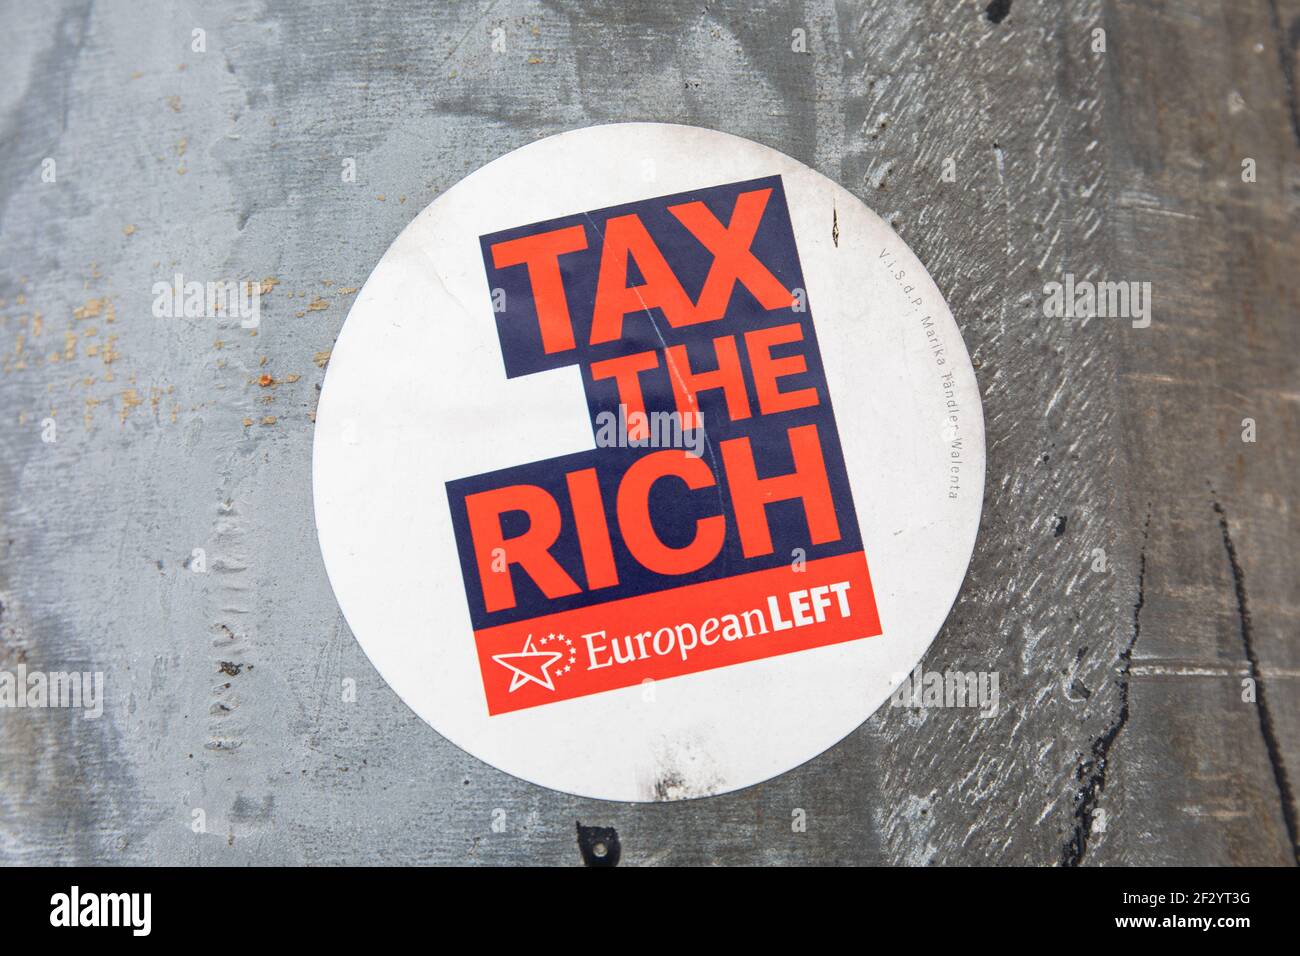 Tax the Rich. European Left sticker on aluminium street light pole in Kallio district of Helsinki, Finland. Stock Photo